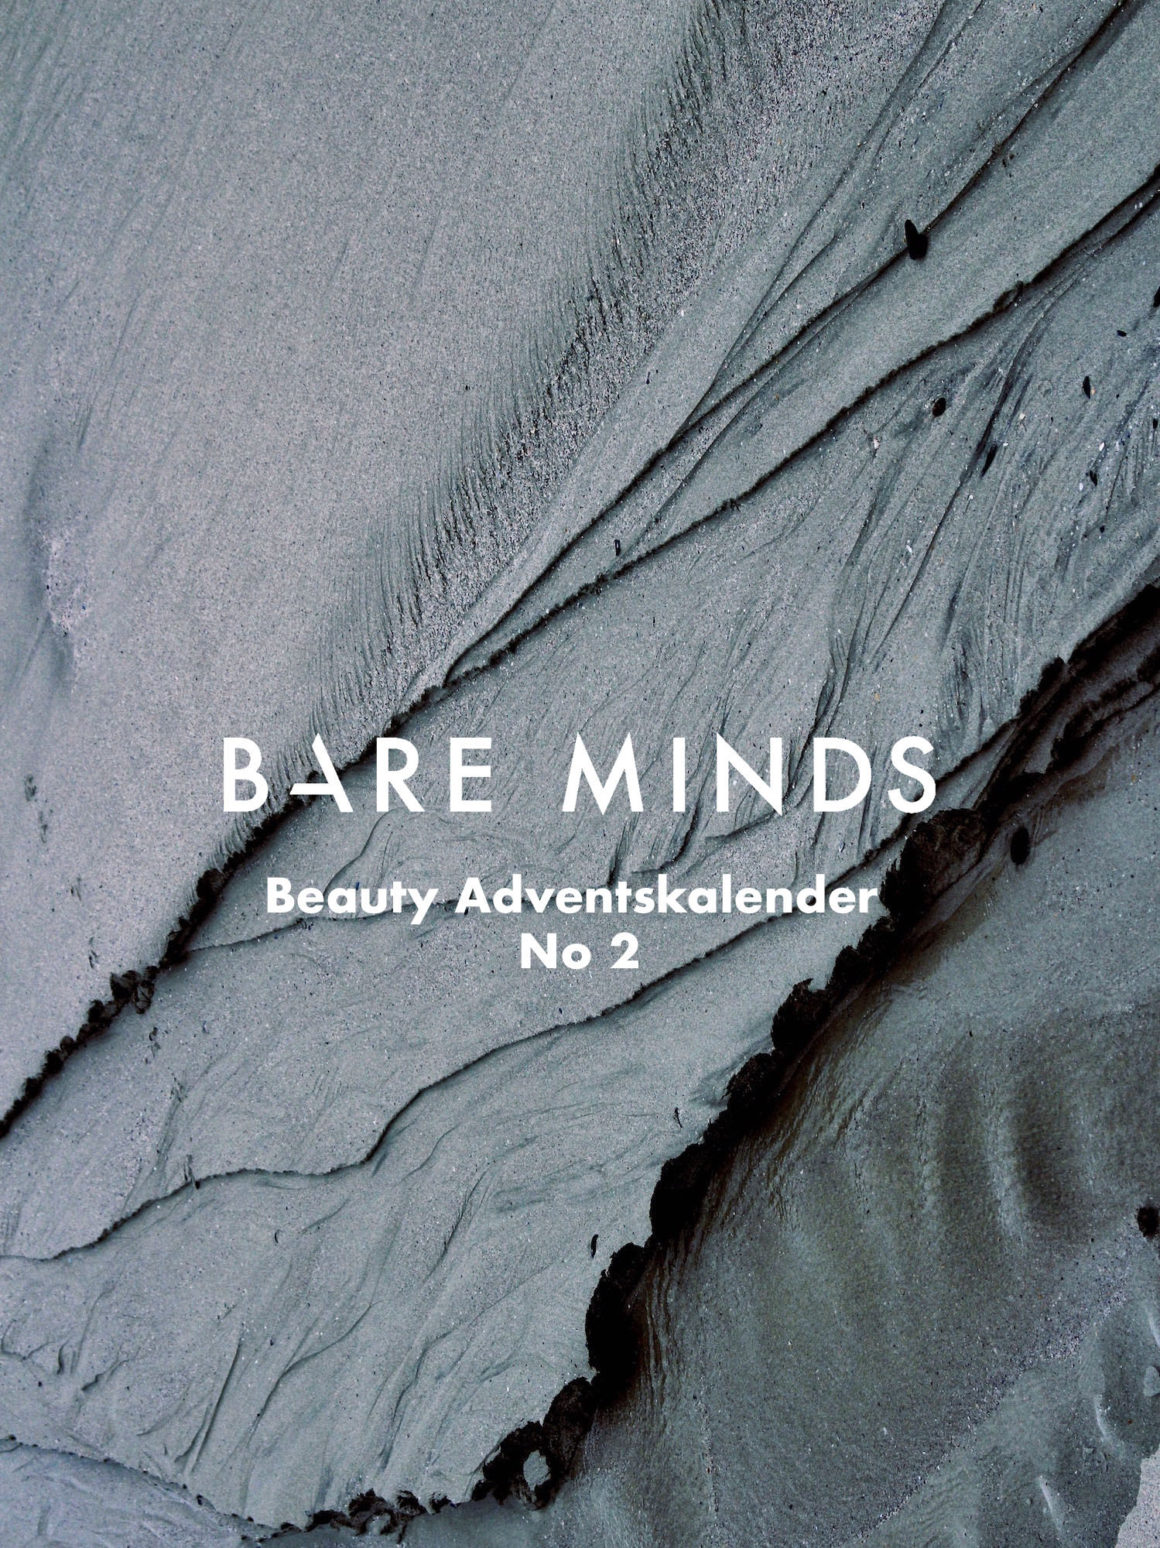 Bare Minds Beauty Adventskalender 2019 02_